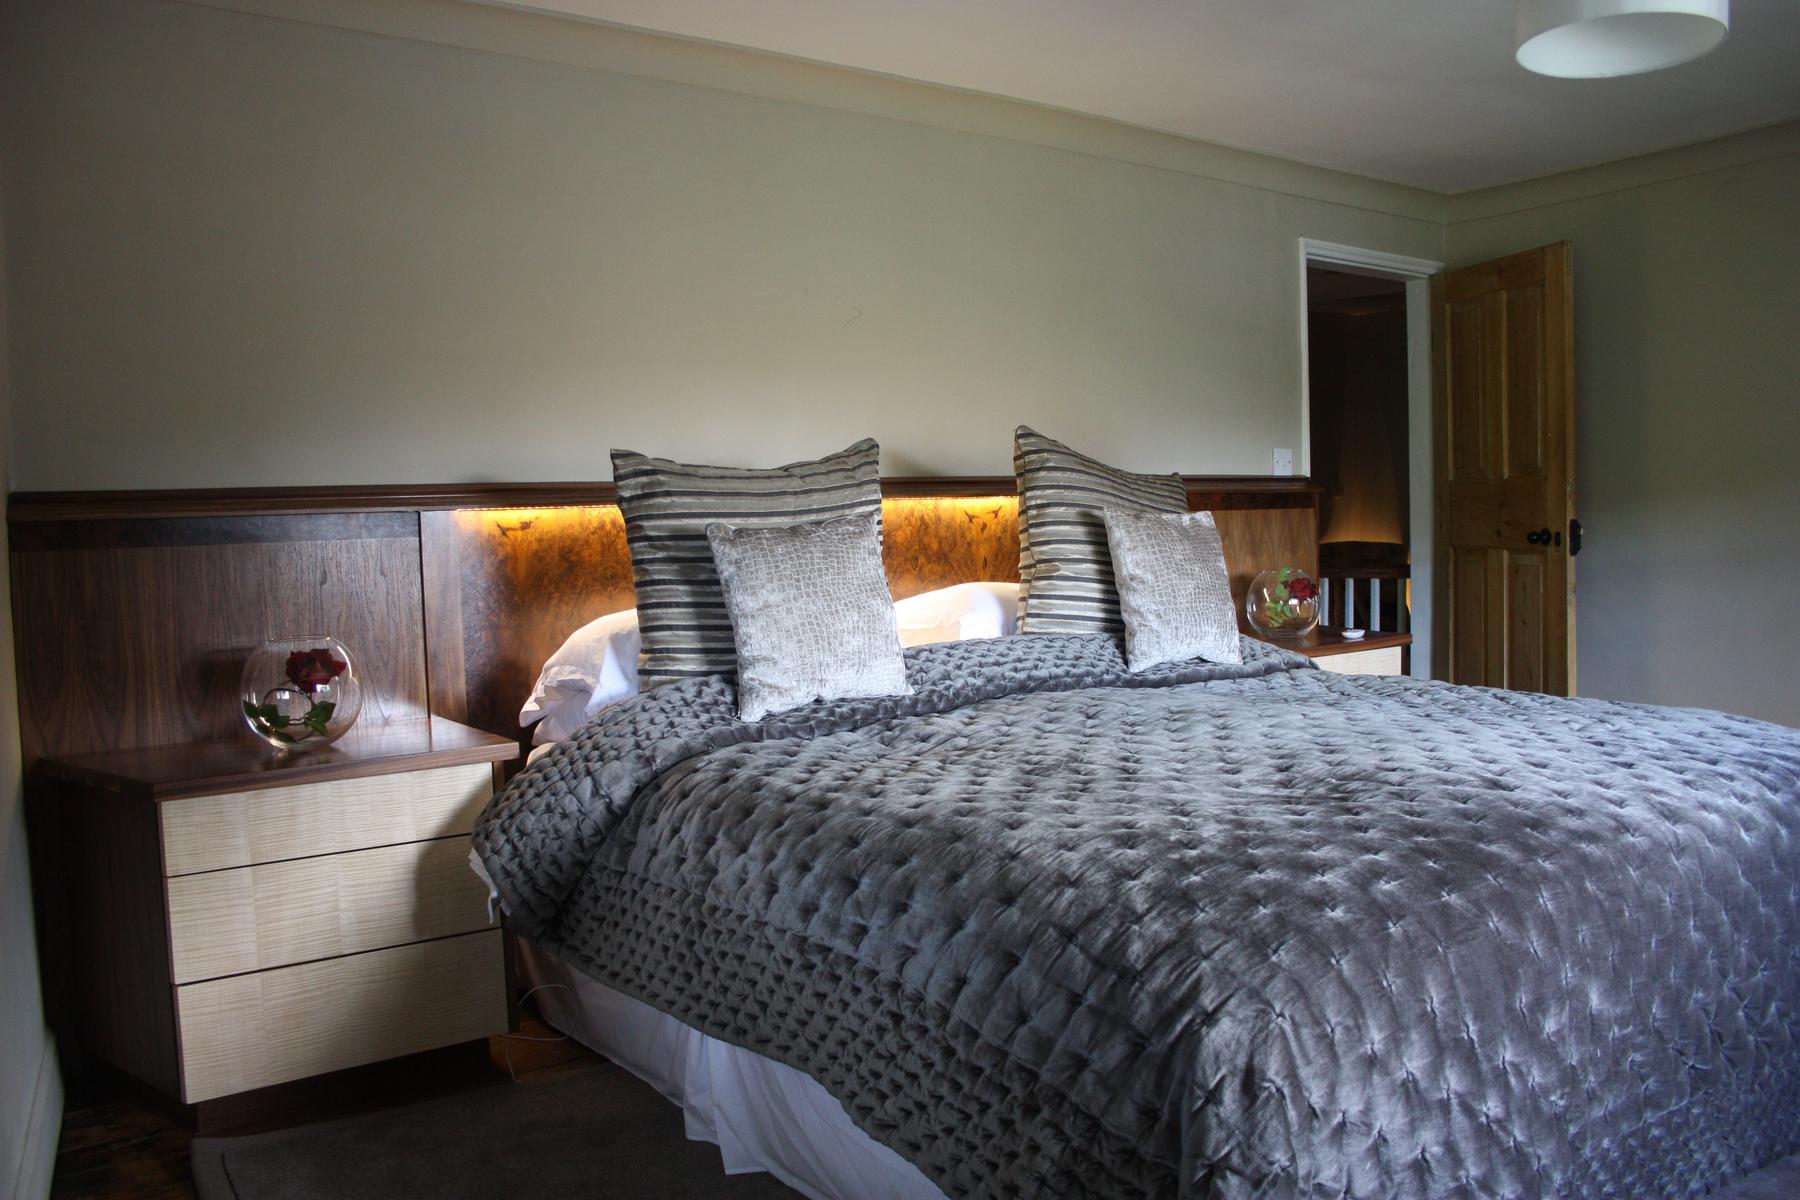 bespoke bedroom furniture west yorkshire